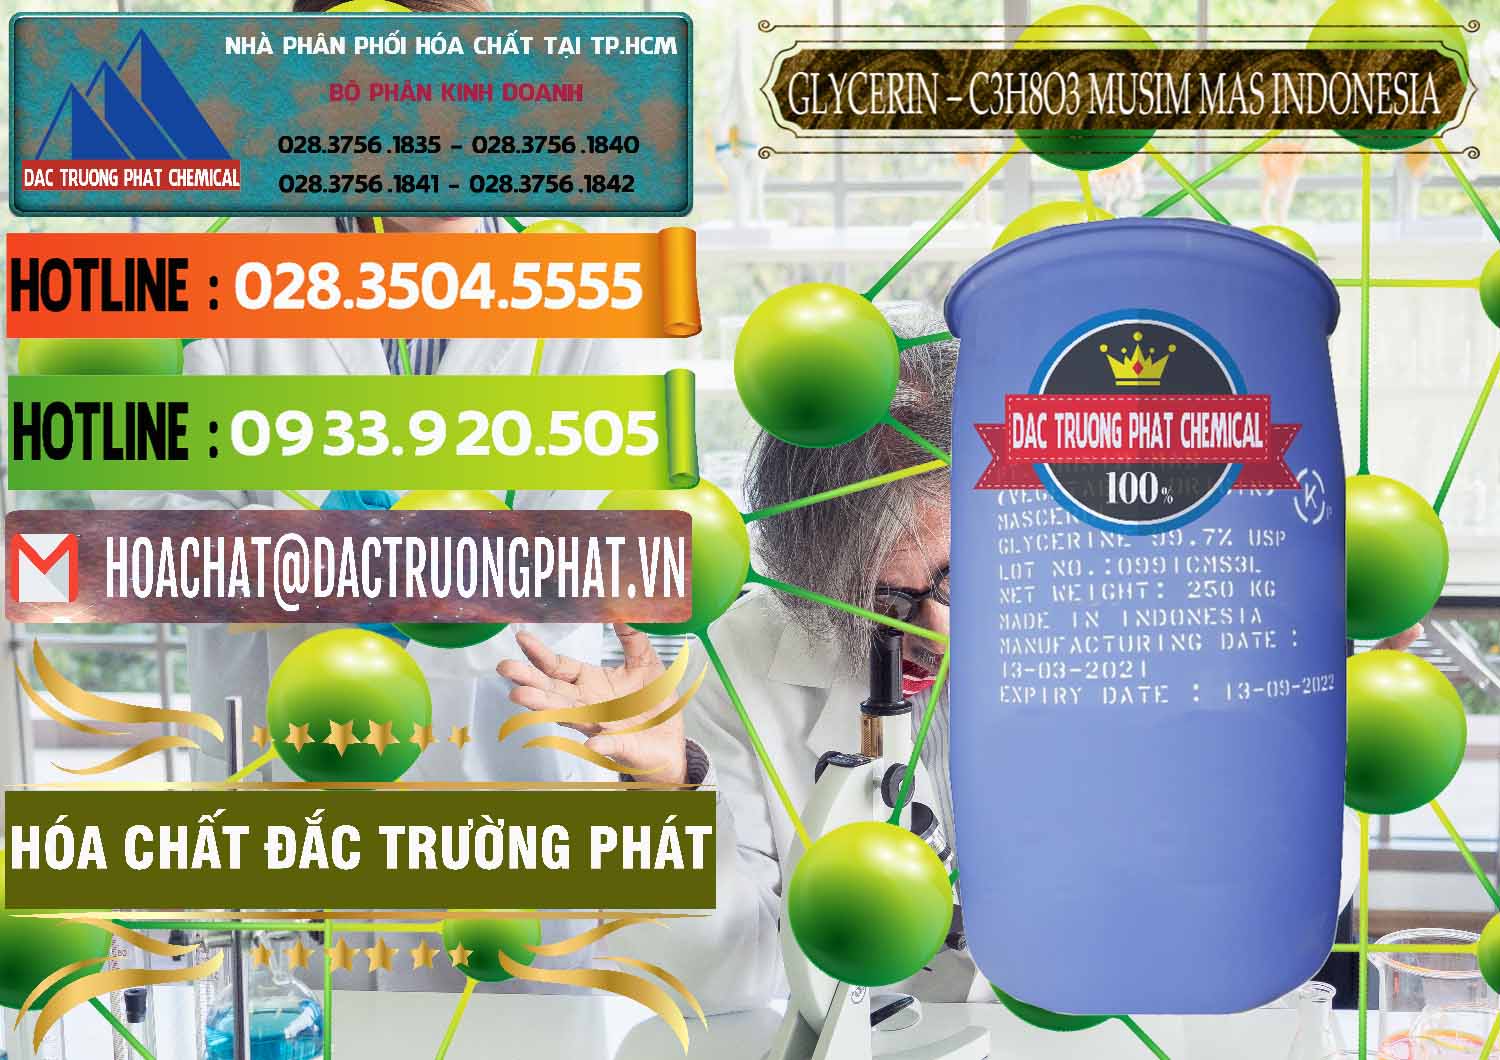 Chuyên bán _ cung ứng Glycerin – C3H8O3 99.7% Musim Mas Indonesia - 0272 - Phân phối ( cung ứng ) hóa chất tại TP.HCM - cungcaphoachat.com.vn